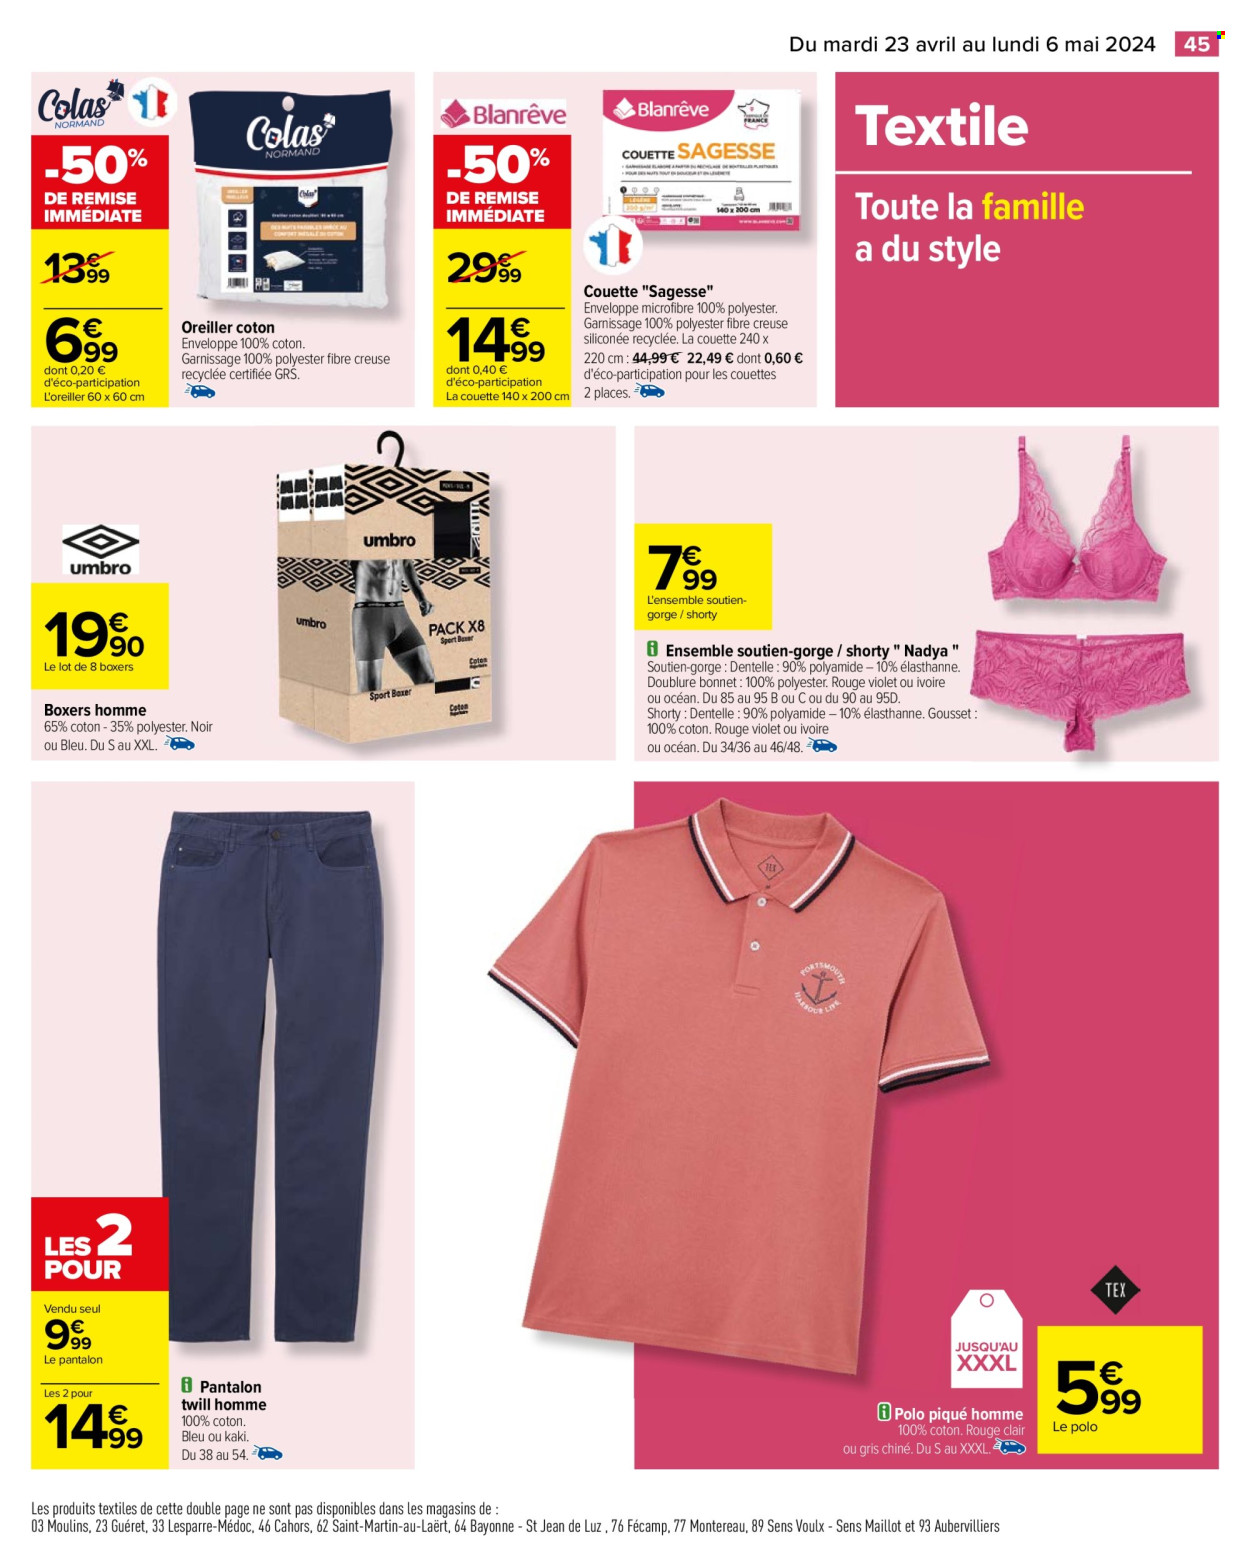 thumbnail - Catalogue Carrefour Hypermarchés - 23/04/2024 - 06/05/2024 - Produits soldés - oreiller, couette, Umbro, boxers, soutien-gorge, pantalon. Page 47.